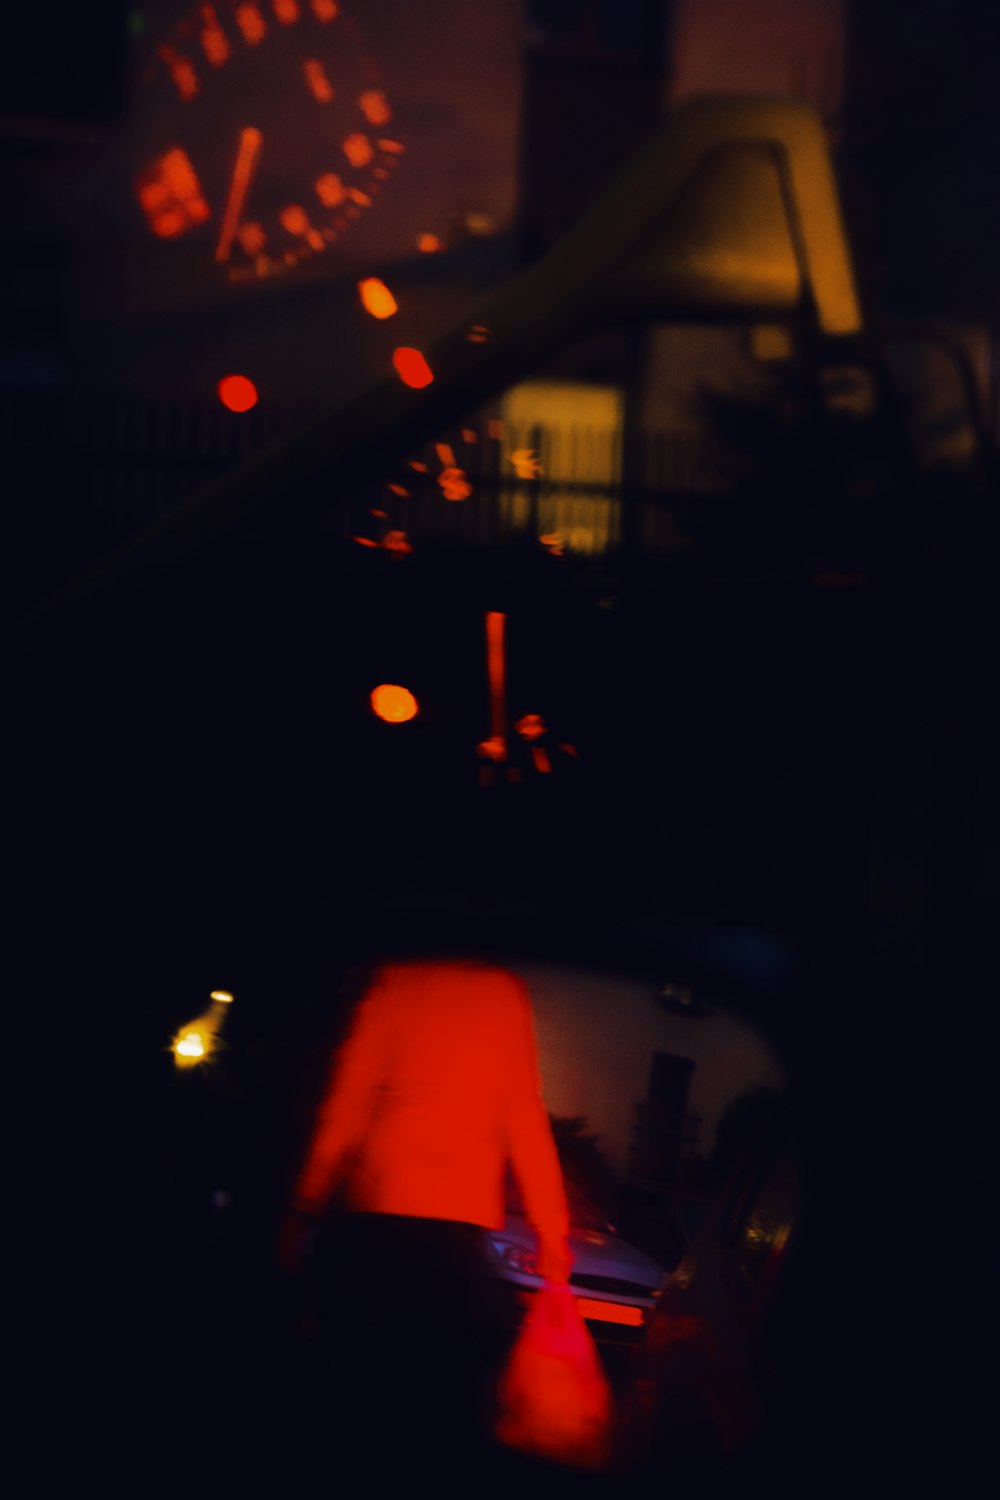 밤에 차 안에 있는 사람의 흐릿한 사진